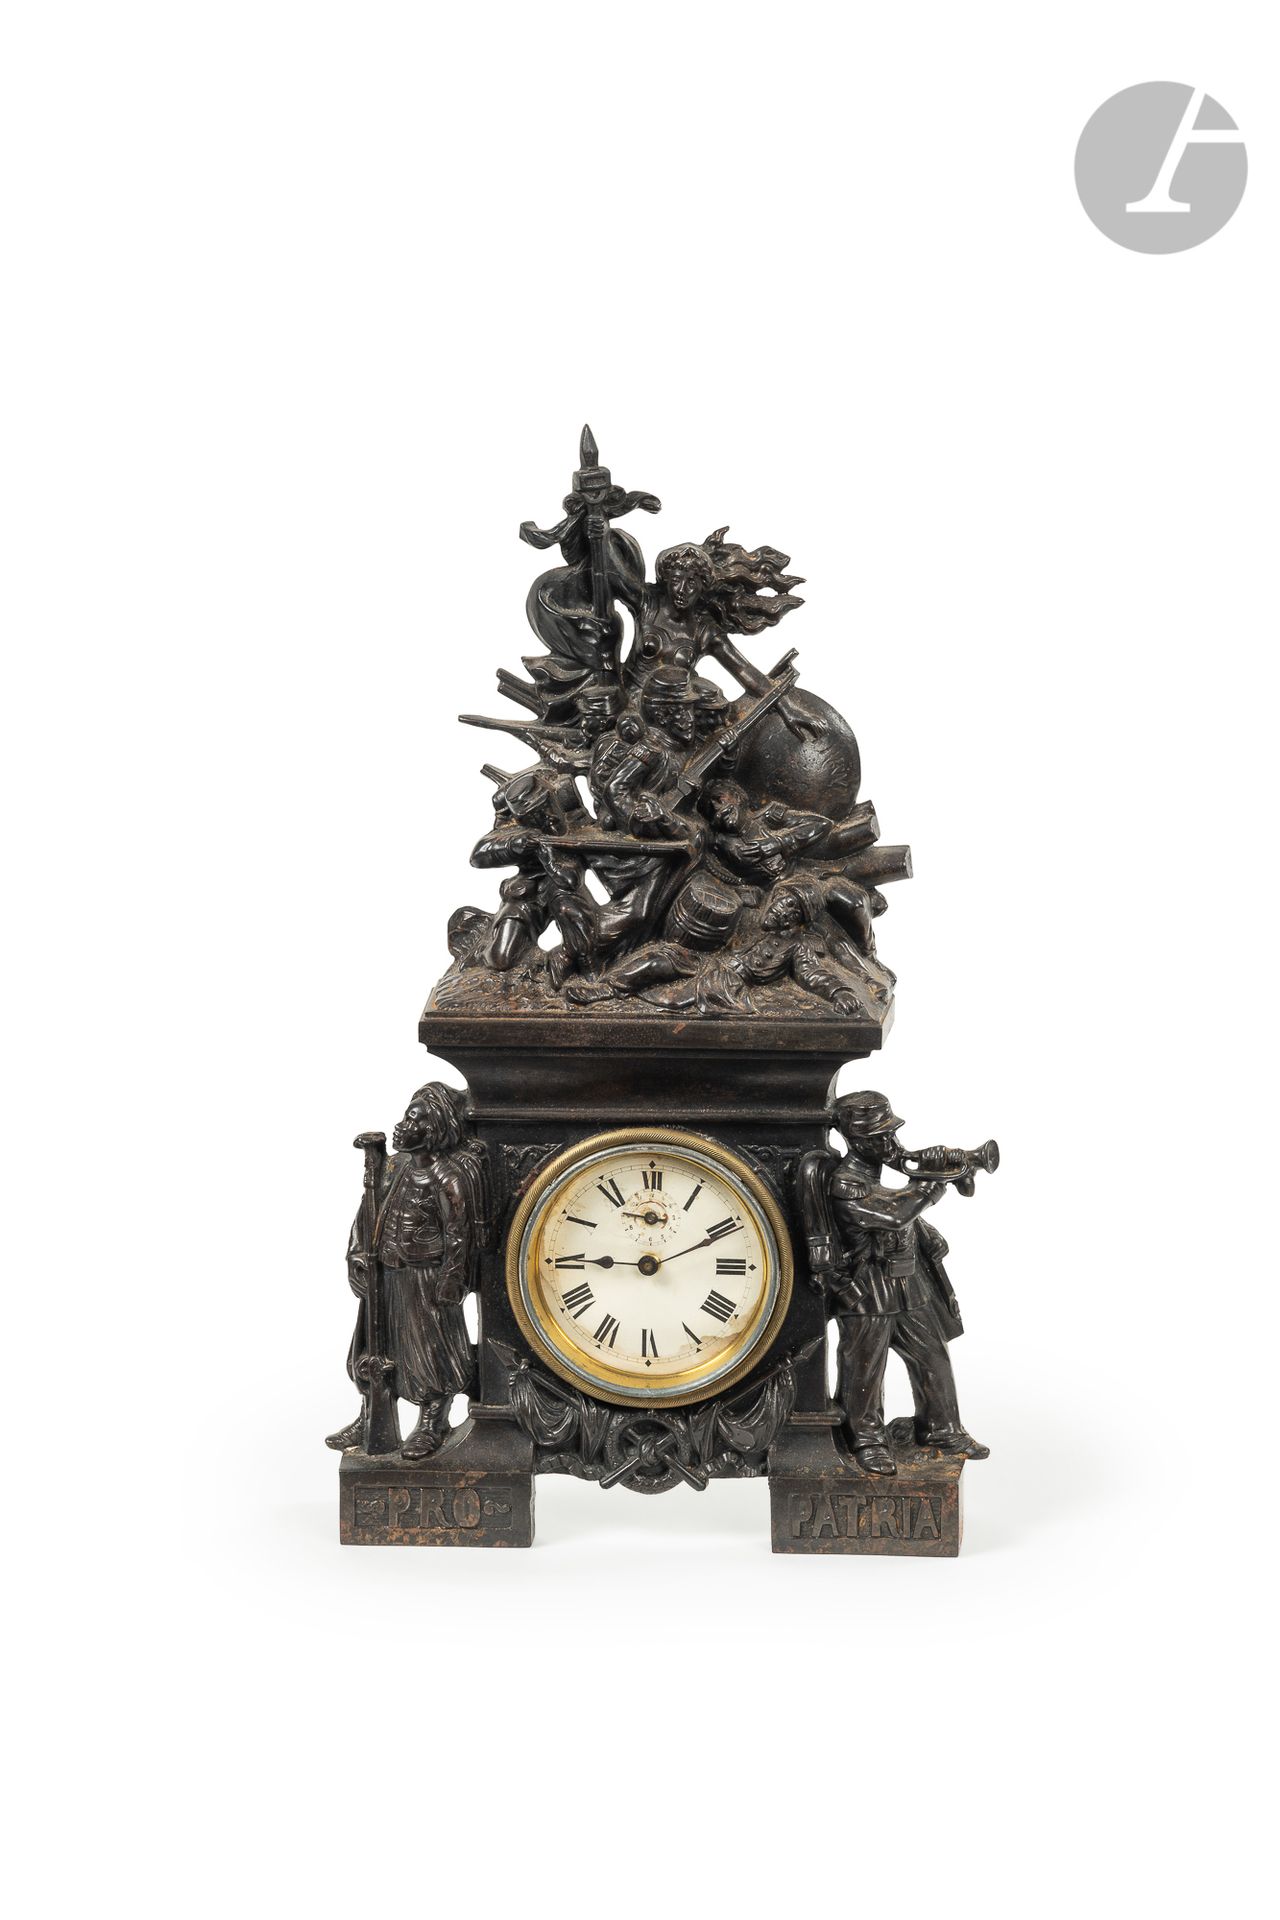 Null "PRO PATRIA". 1870 " 
Reloj de hierro fundido patinado y decorado con una a&hellip;